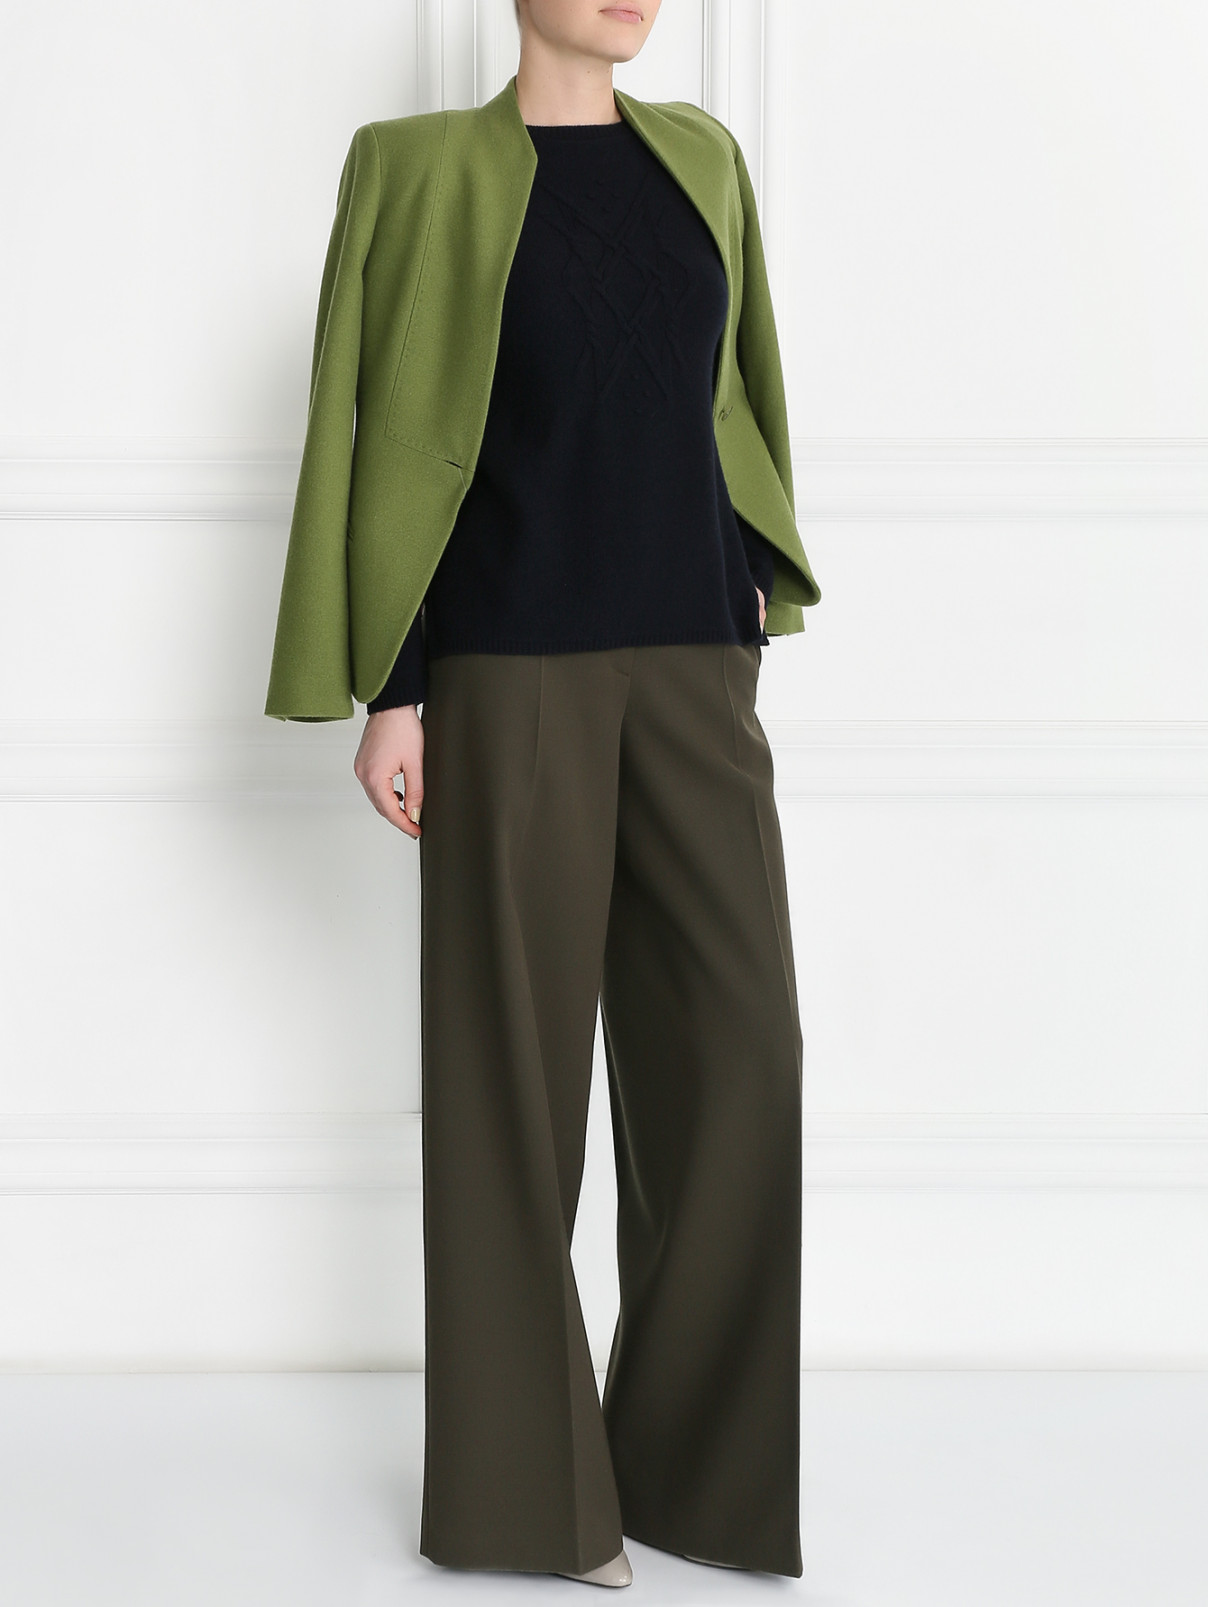 Завышенные брюки из шерсти Jil Sander  –  Модель Общий вид  – Цвет:  Зеленый